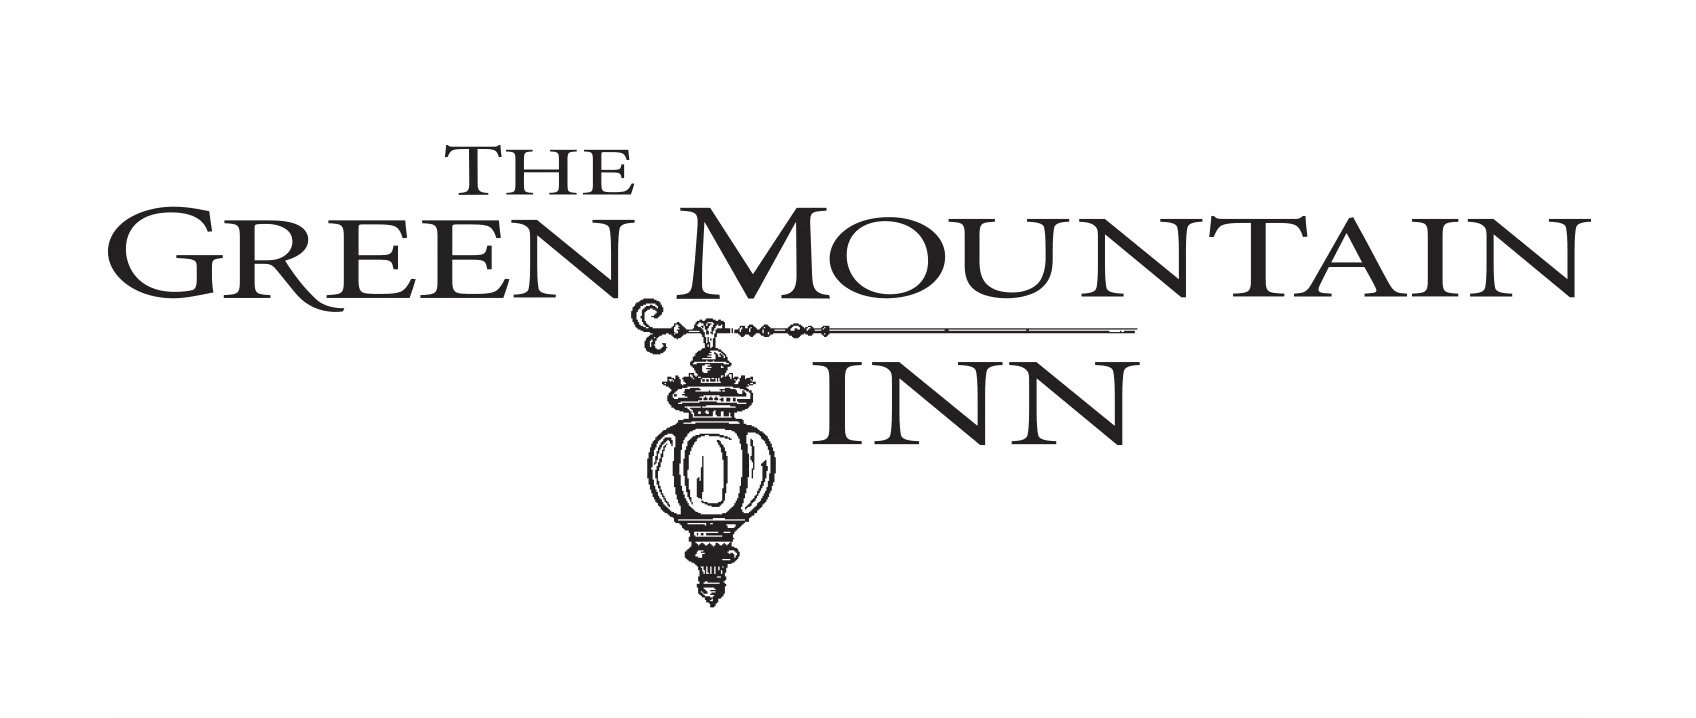 Green Mountain Inn Logos